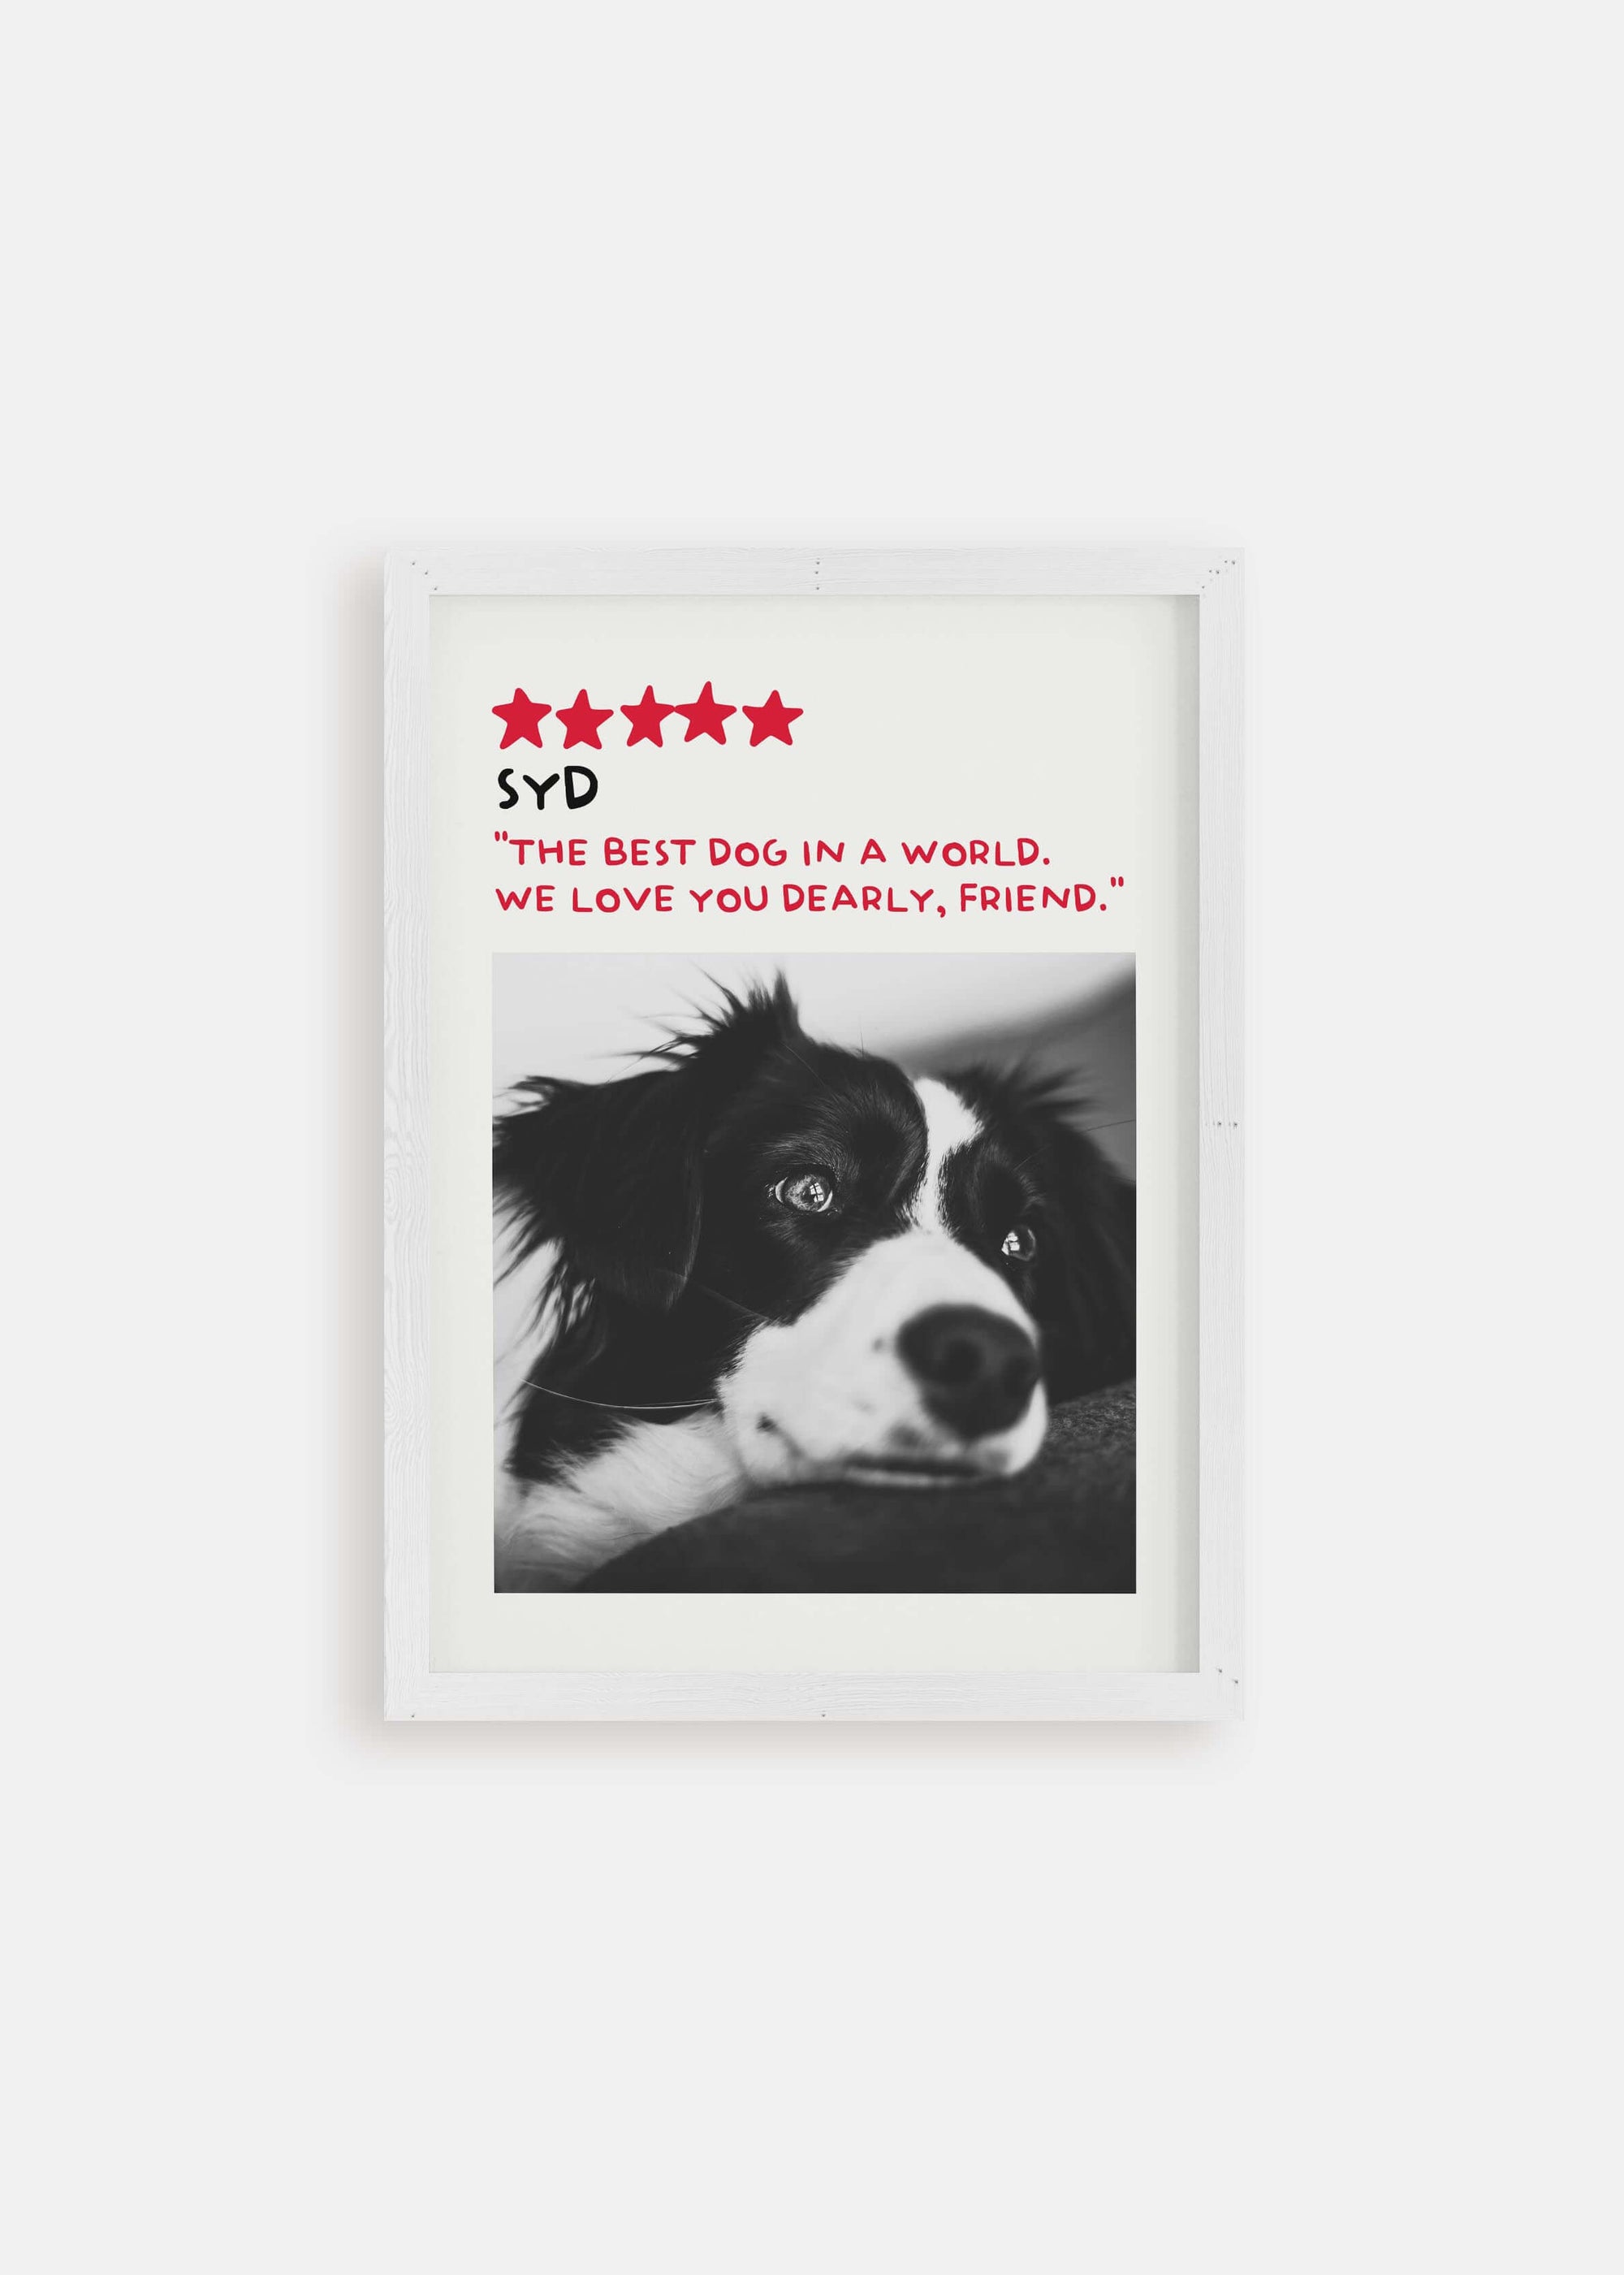 Dog memorial pet art poster in white frame.